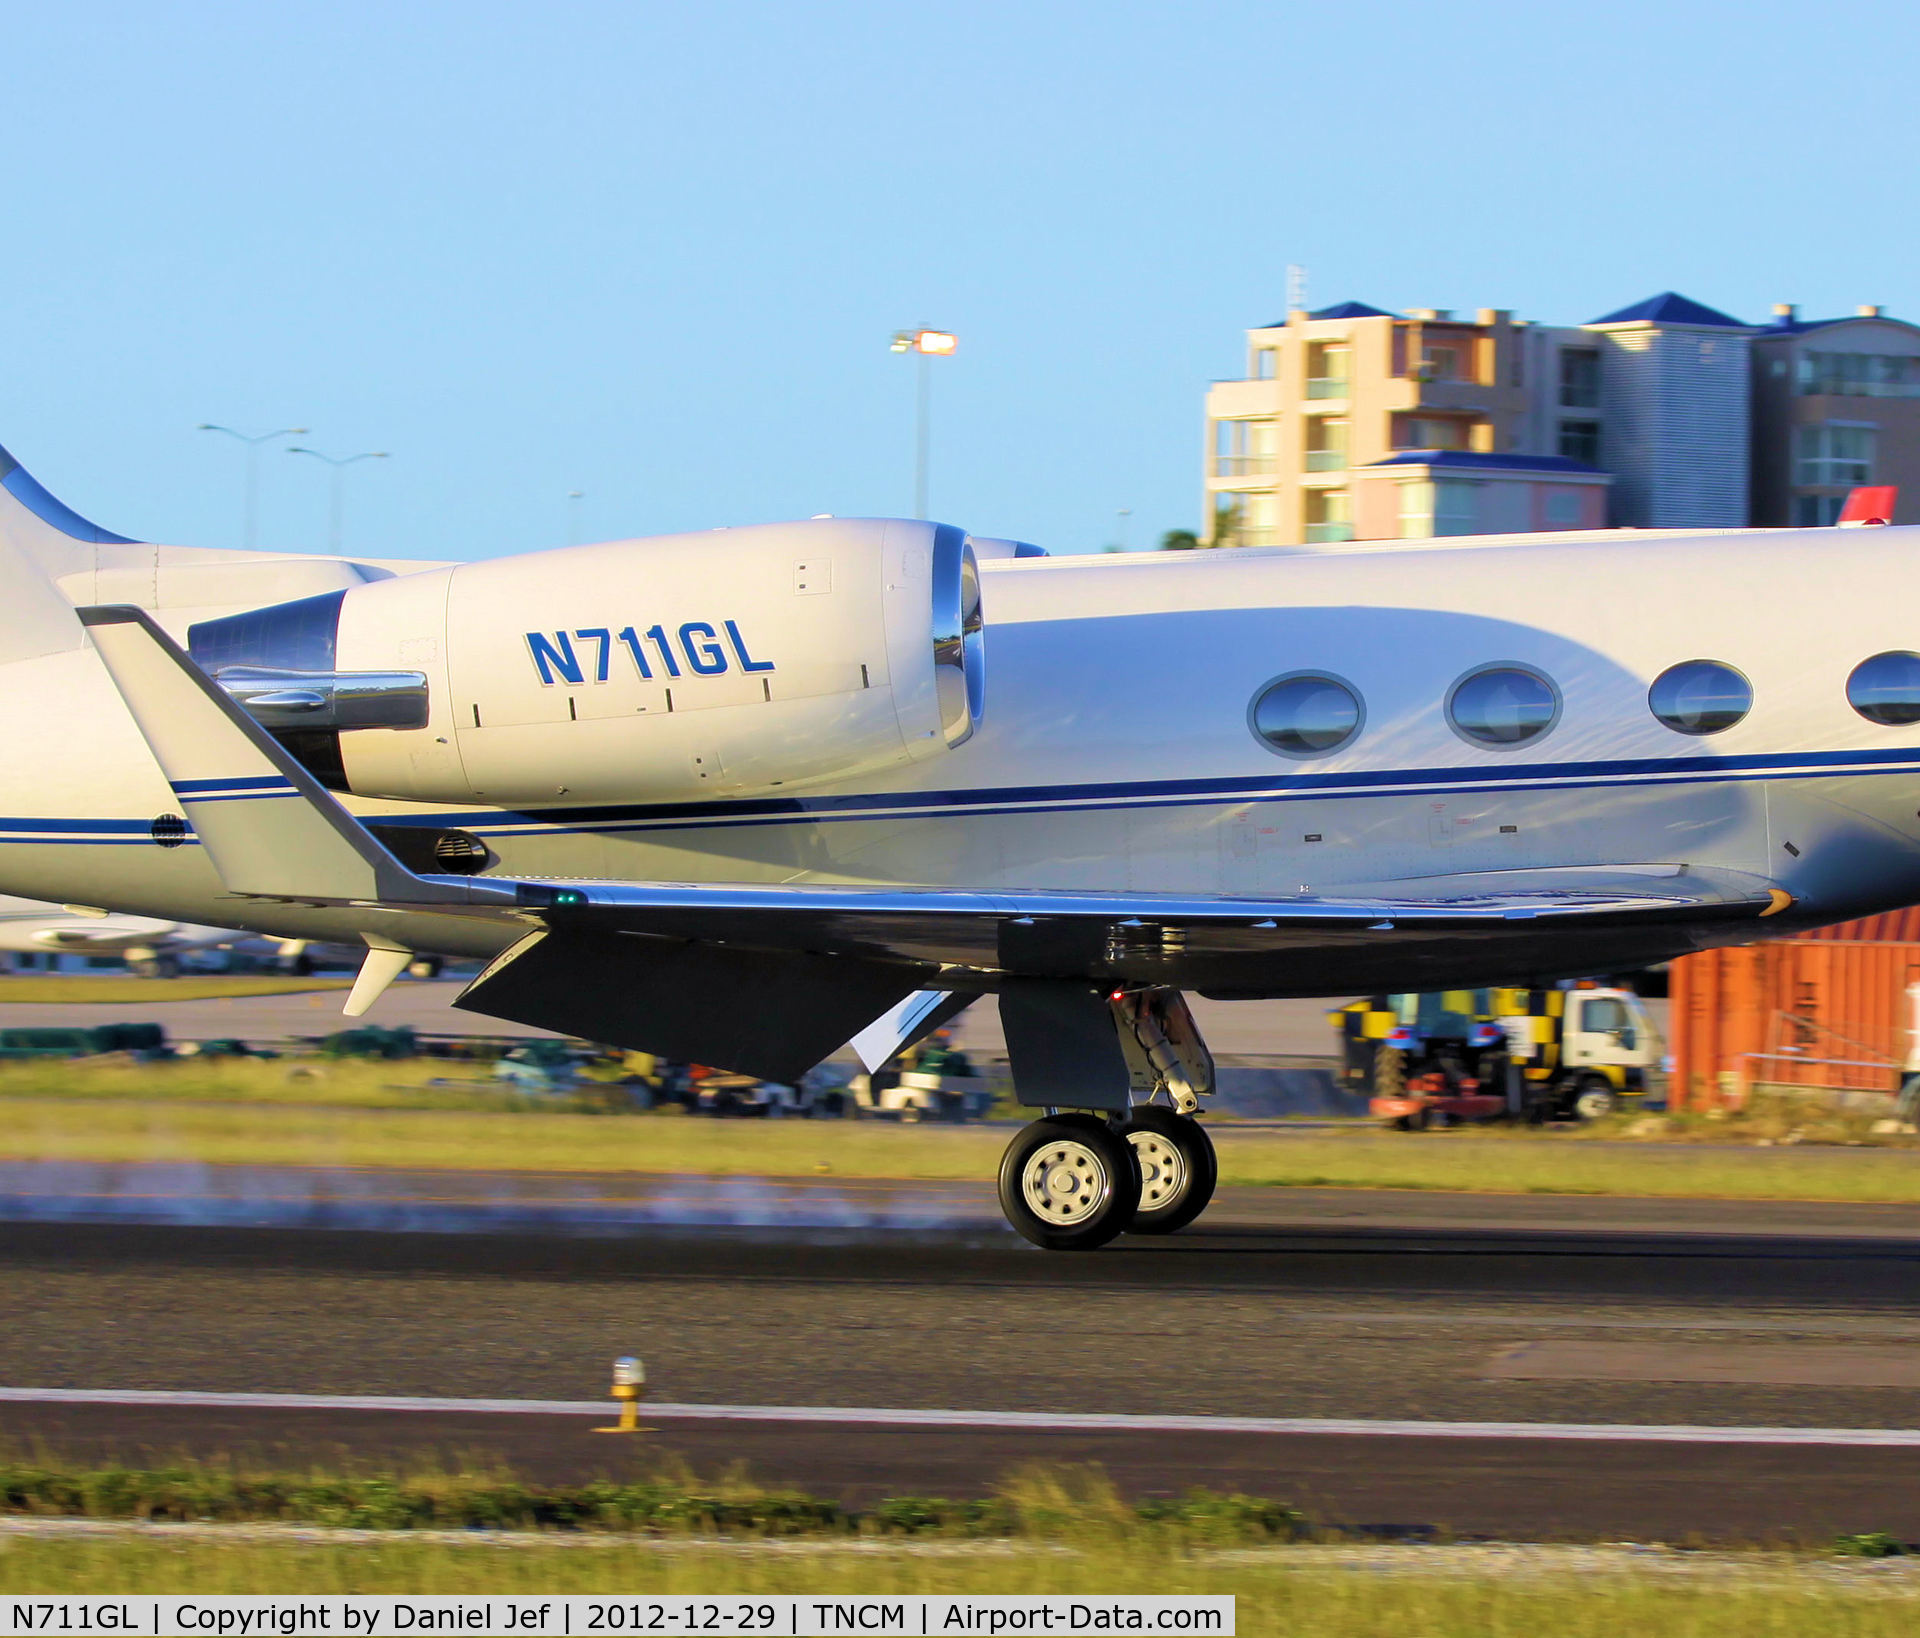 N711GL, 1990 Gulfstream Aerospace G-IV C/N 1130, N711GL